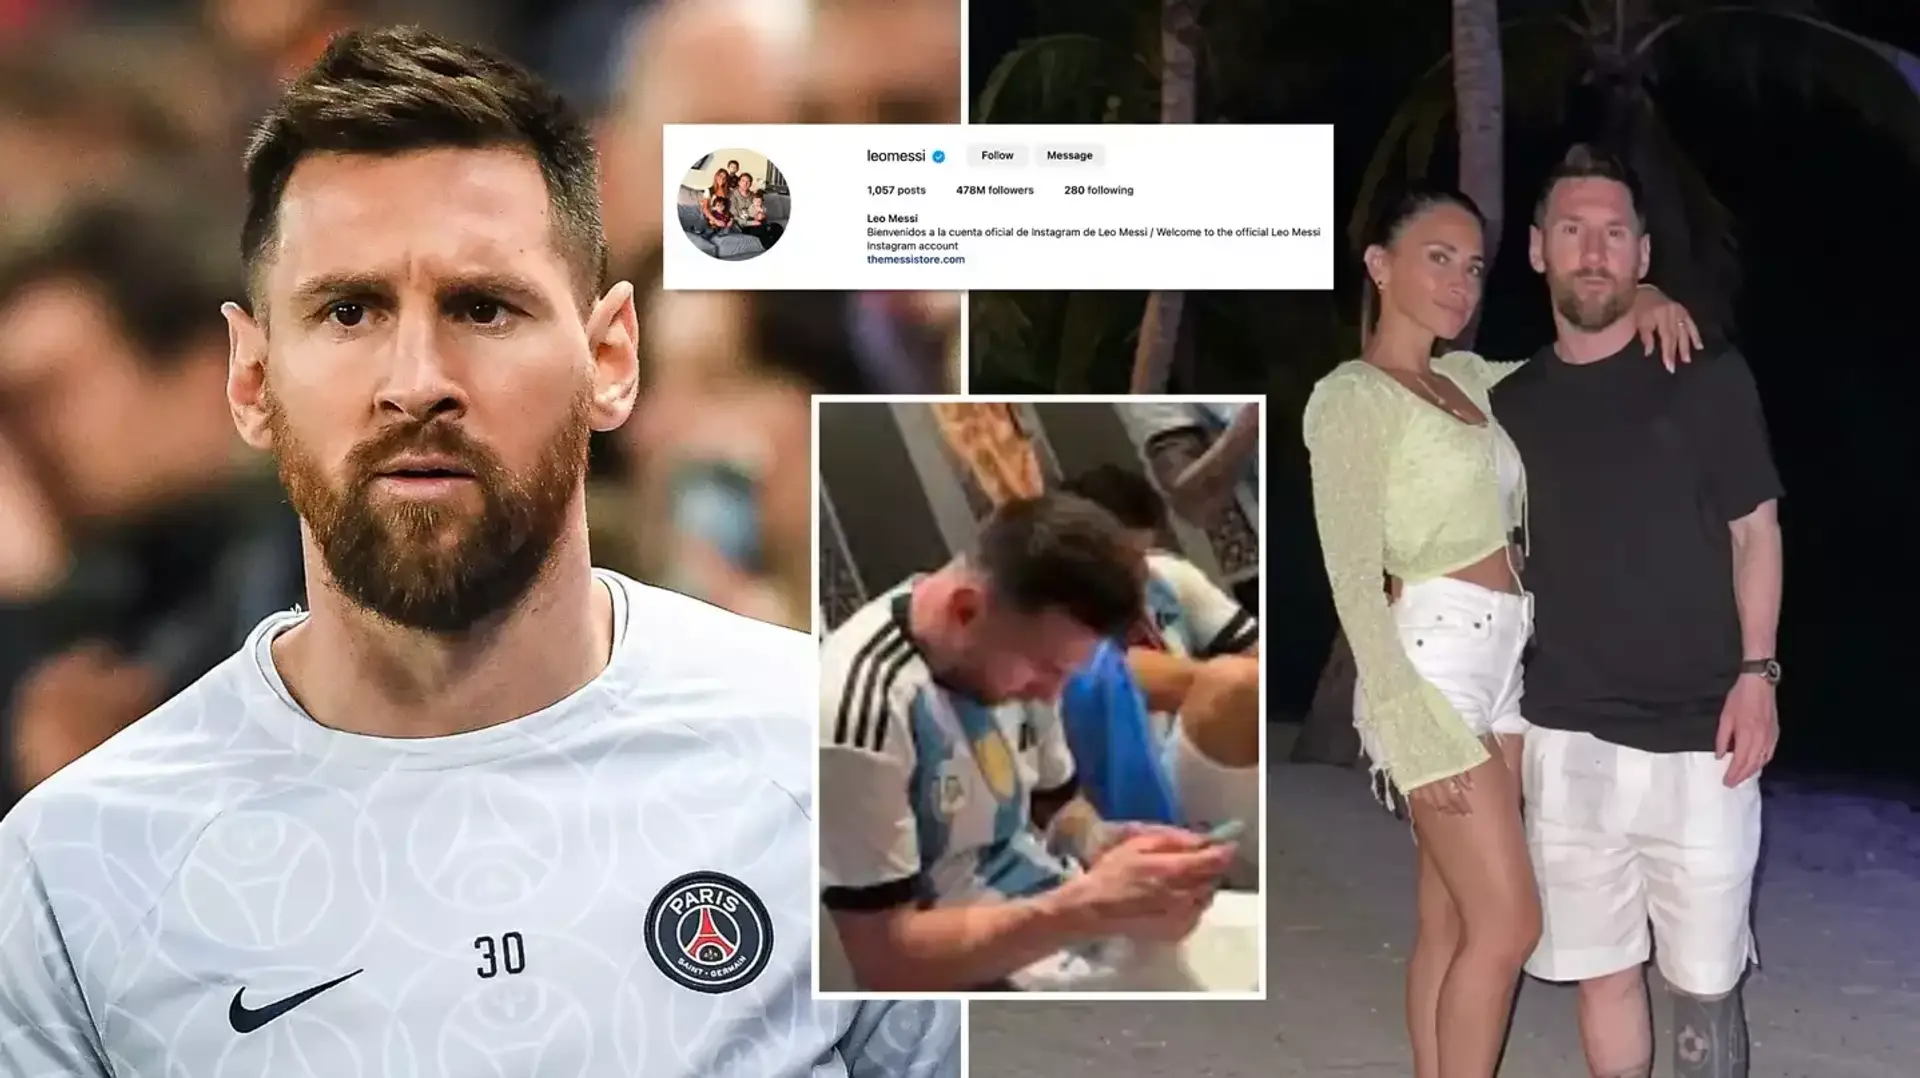 Messi folgt PSG in den sozialen Medien nicht mehr. Leo interessiert sich nur noch für folgende vier Vereine